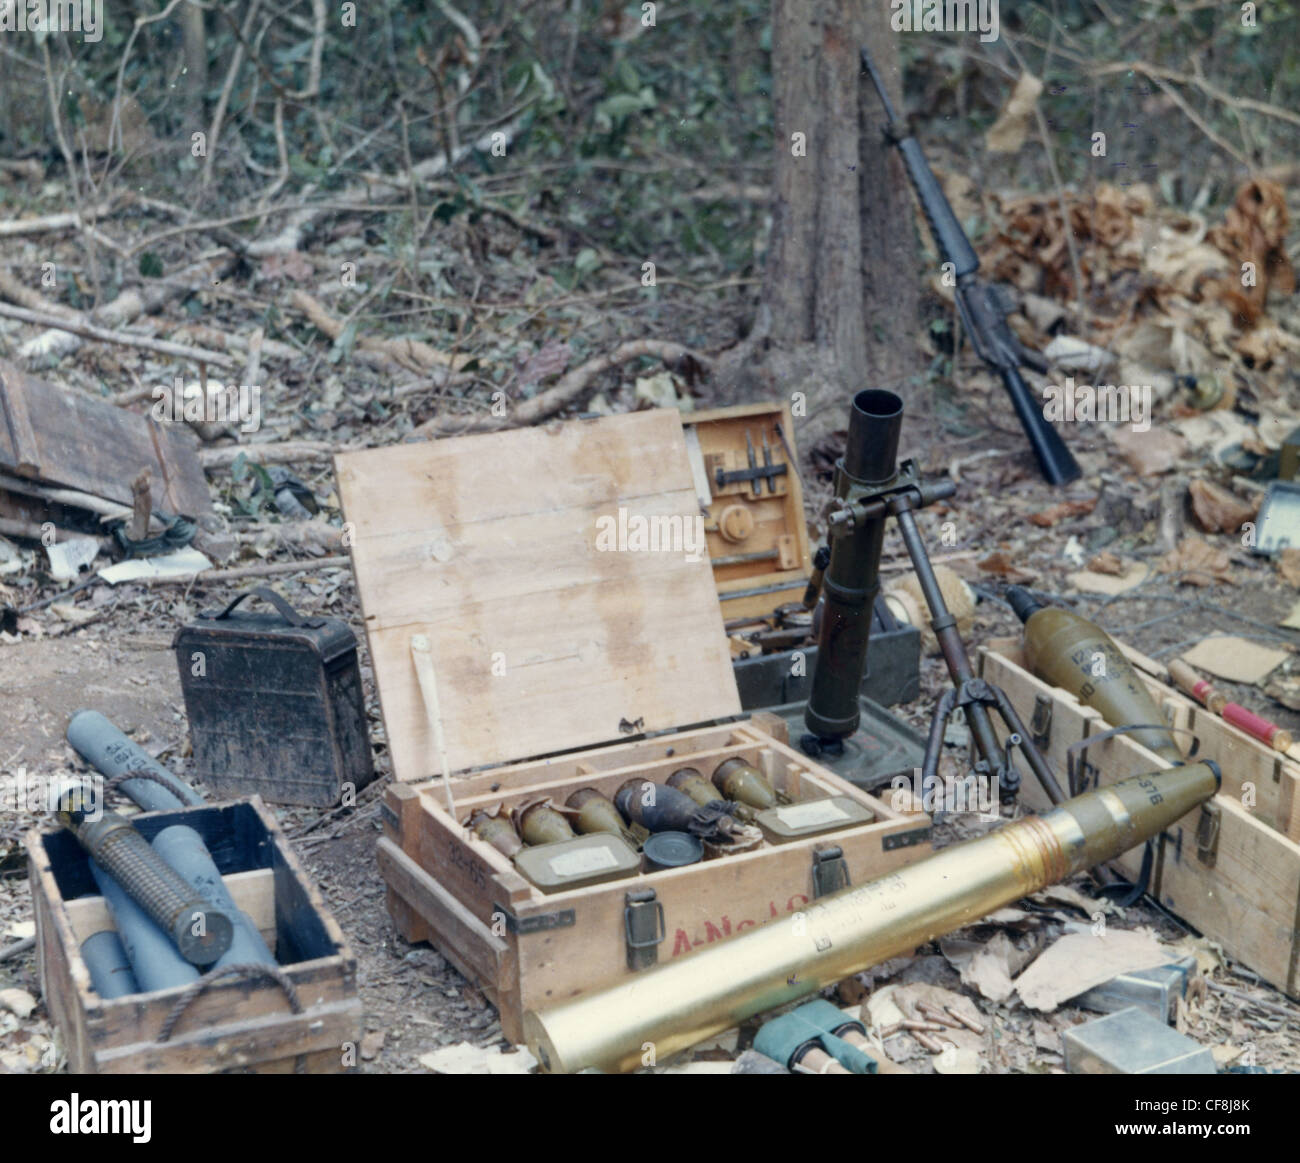 Munition und Ausrüstung in einem Bunker von den Mitgliedern der 1. Kavallerie-Division im Bereich Angelhaken von Kambodscha entdeckt. Mörser Stockfoto